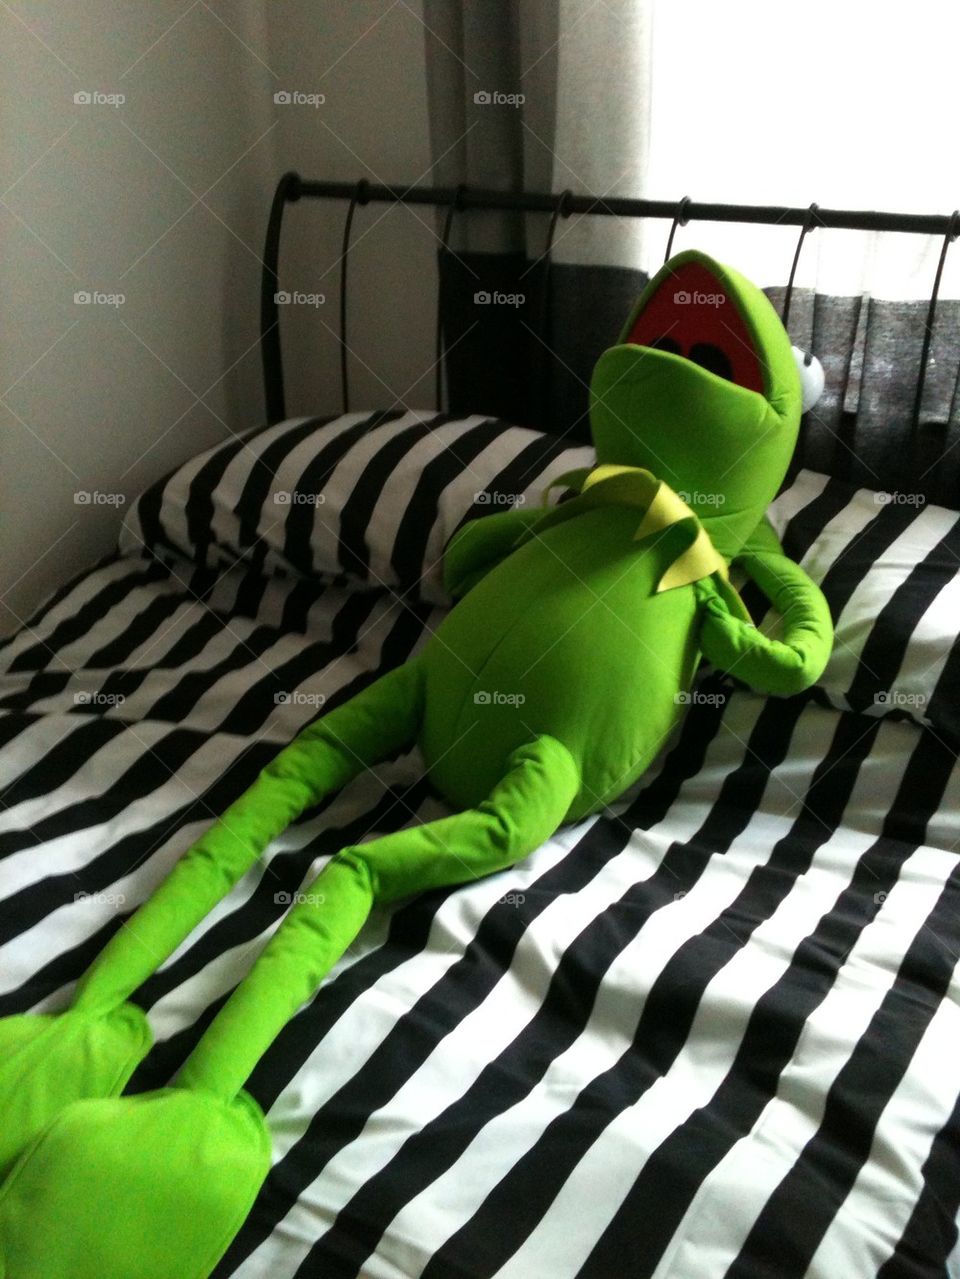 Kermit relaxing